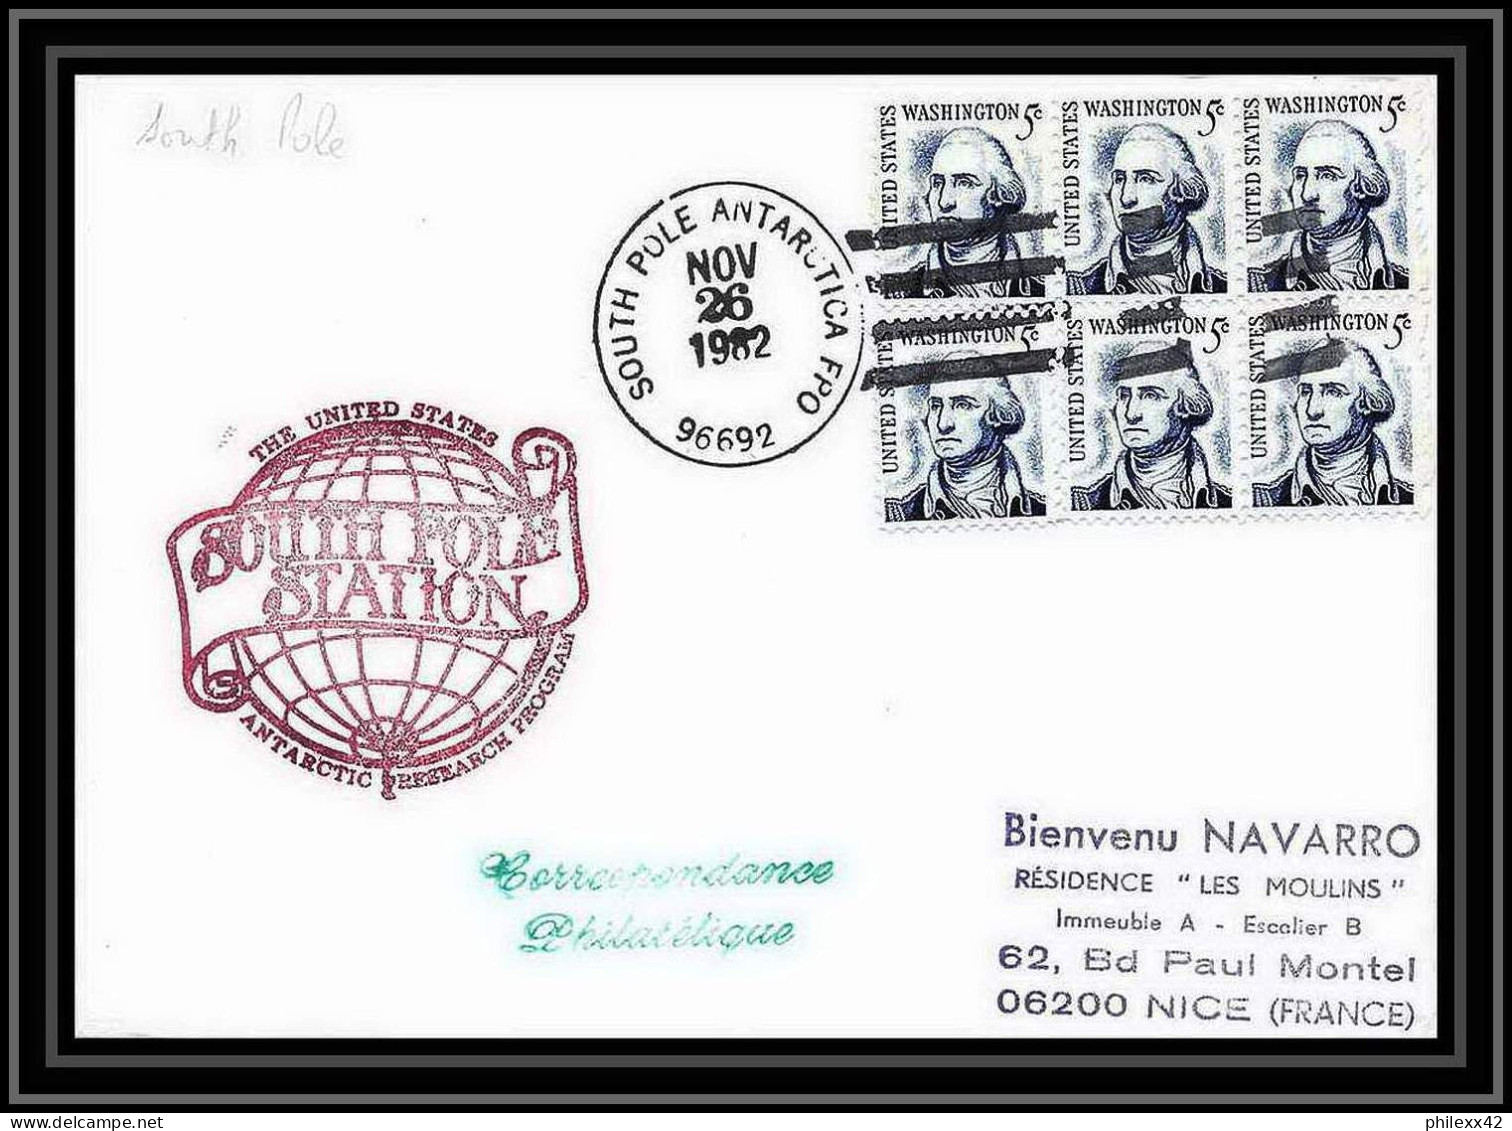 1993 Antarctic USA Lettre (cover) South Pole Station 26/11/1982 - Stazioni Scientifiche E Stazioni Artici Alla Deriva